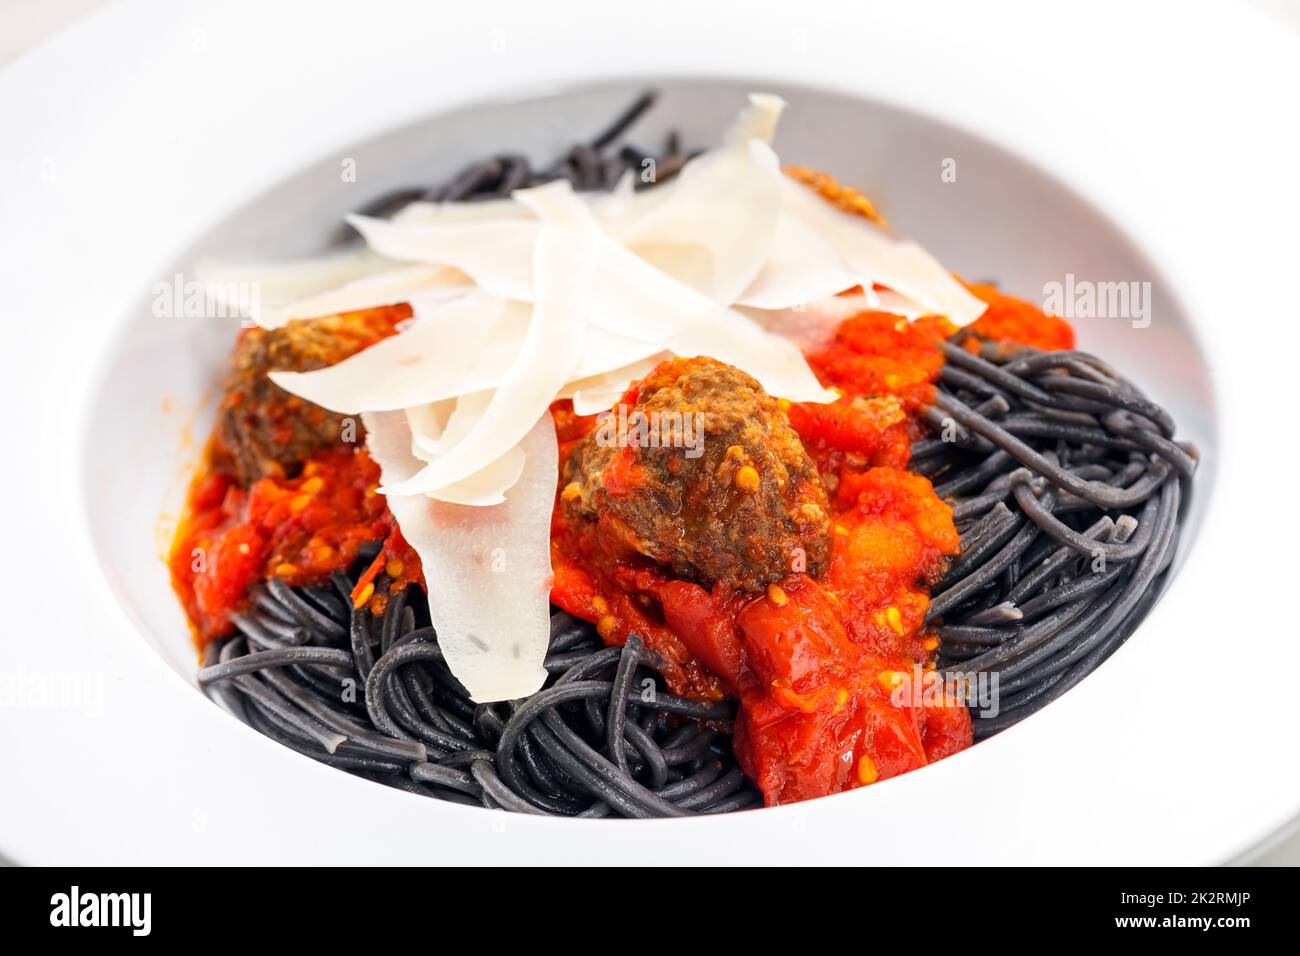 spaghetti noirs avec sauce tomate et boulettes de viande Banque D'Images